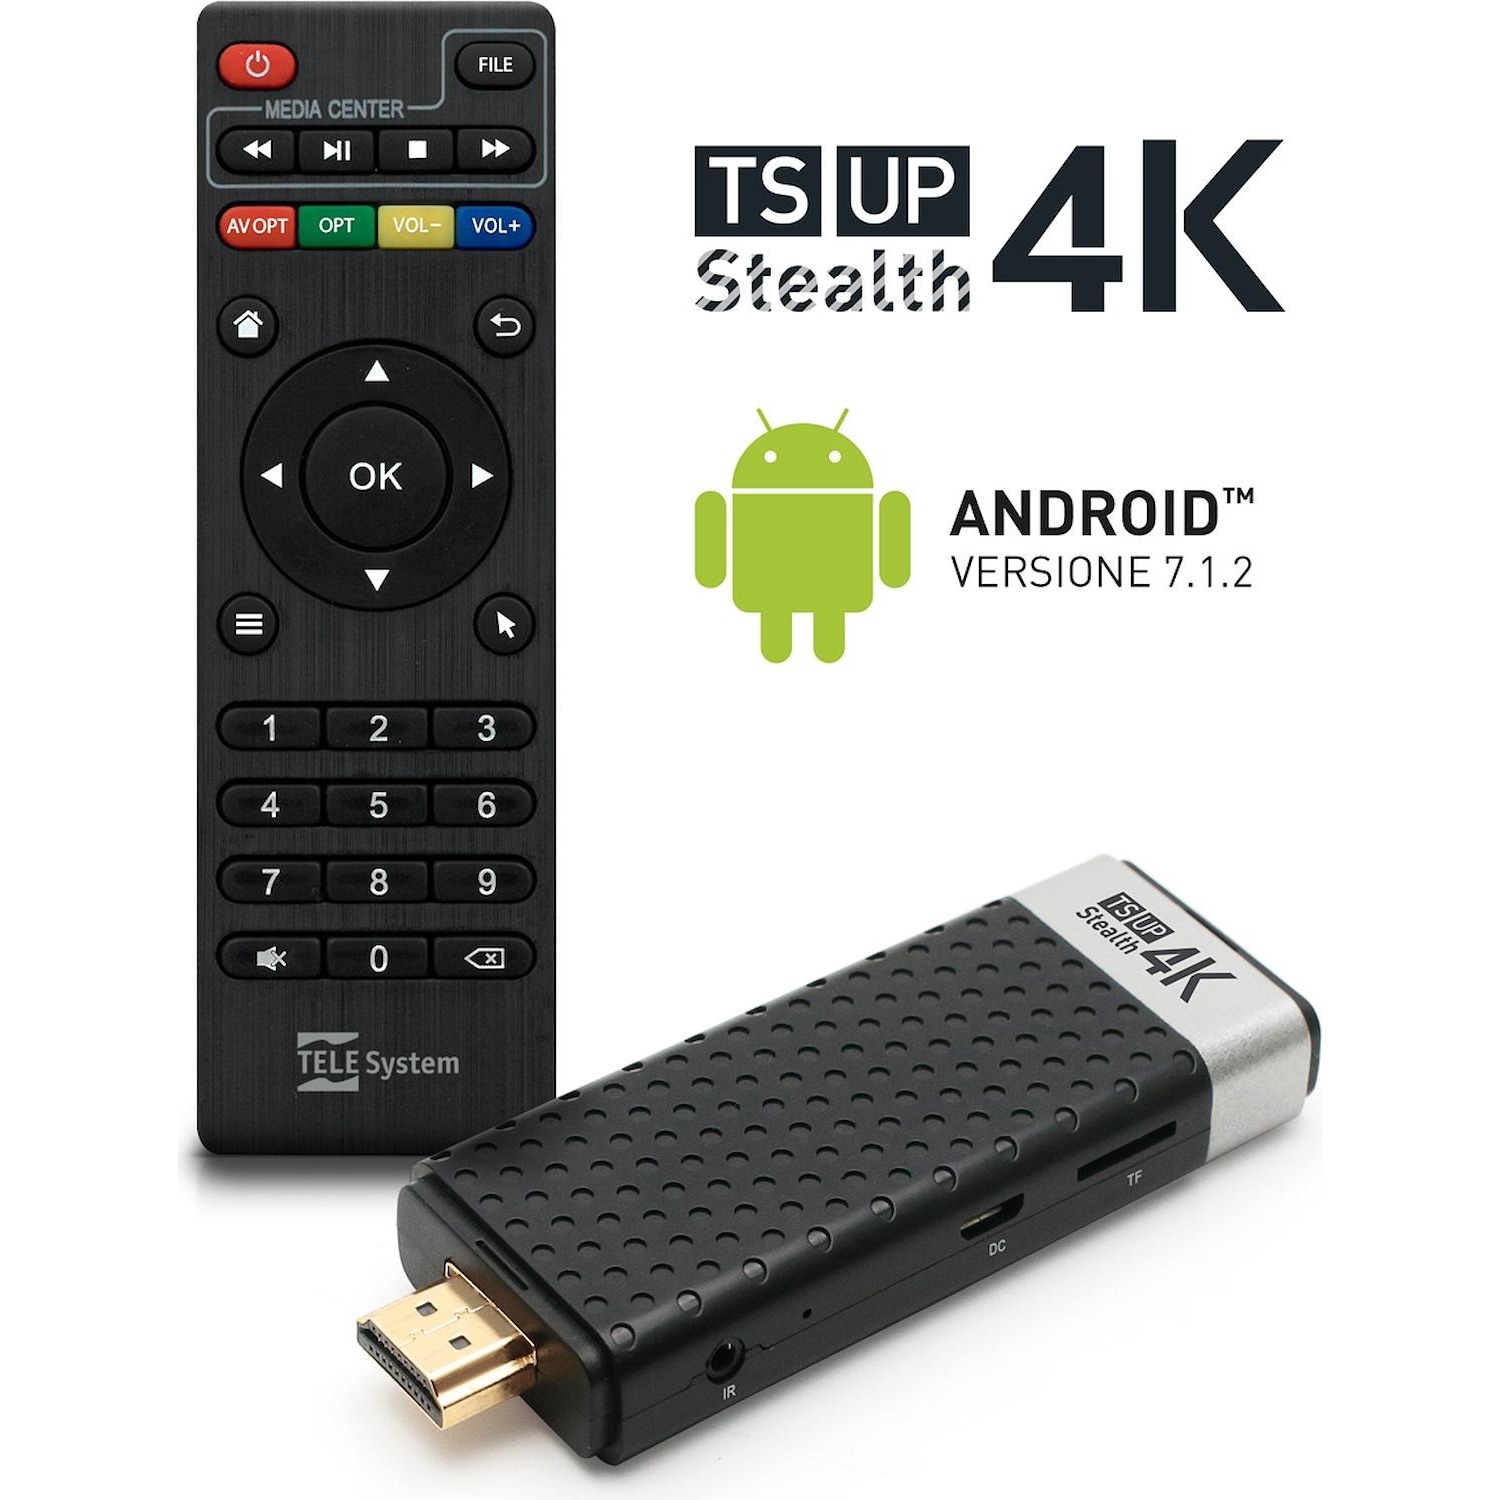 Immagine per Smart Box Android 4K UHD TELE System TSUP4KSTEALTHHDMI Direct da DIMOStore